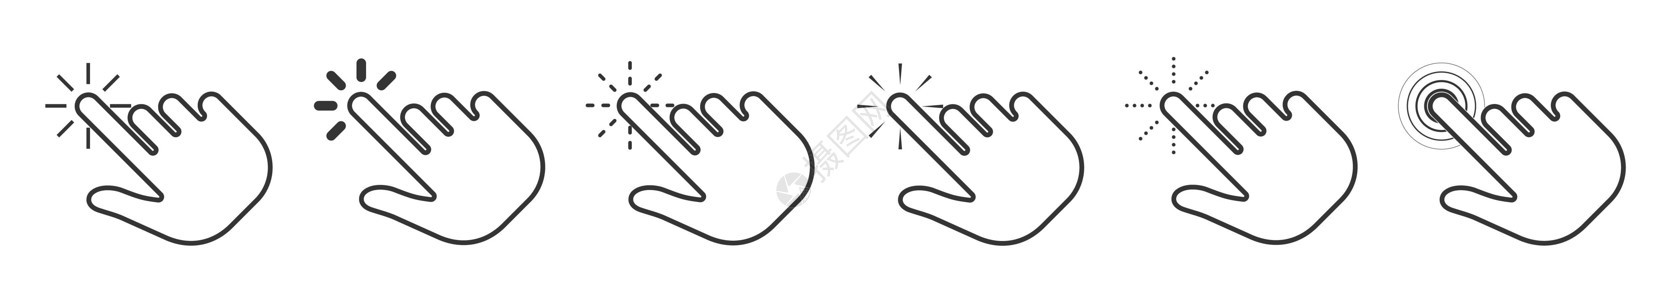 鼠标图标 矢量指向手键单击图标商业手指白色界面按钮技术光标黑色互联网手势图片